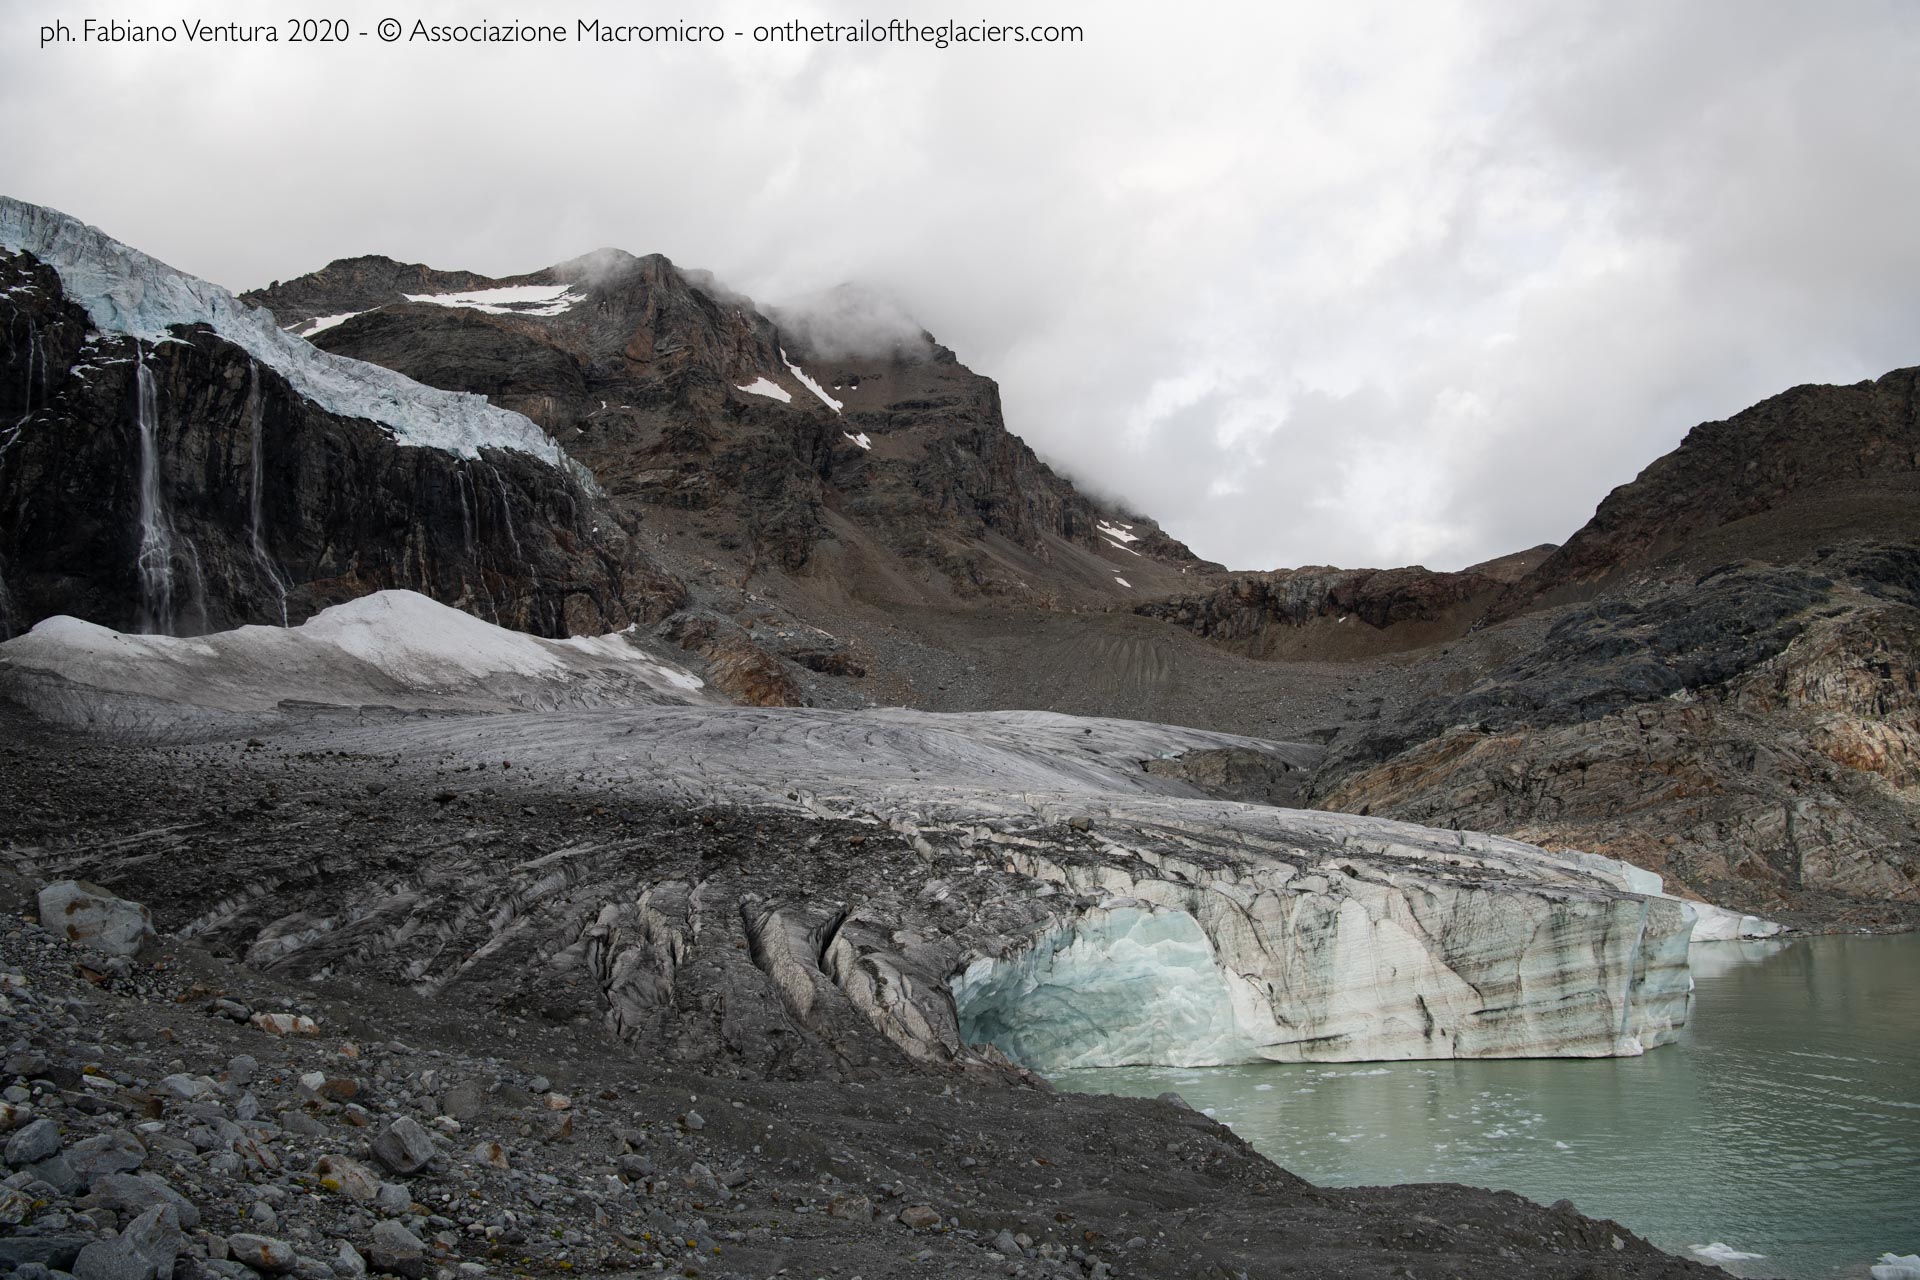 Sulle tracce dei ghiacciai - Alpi 2020